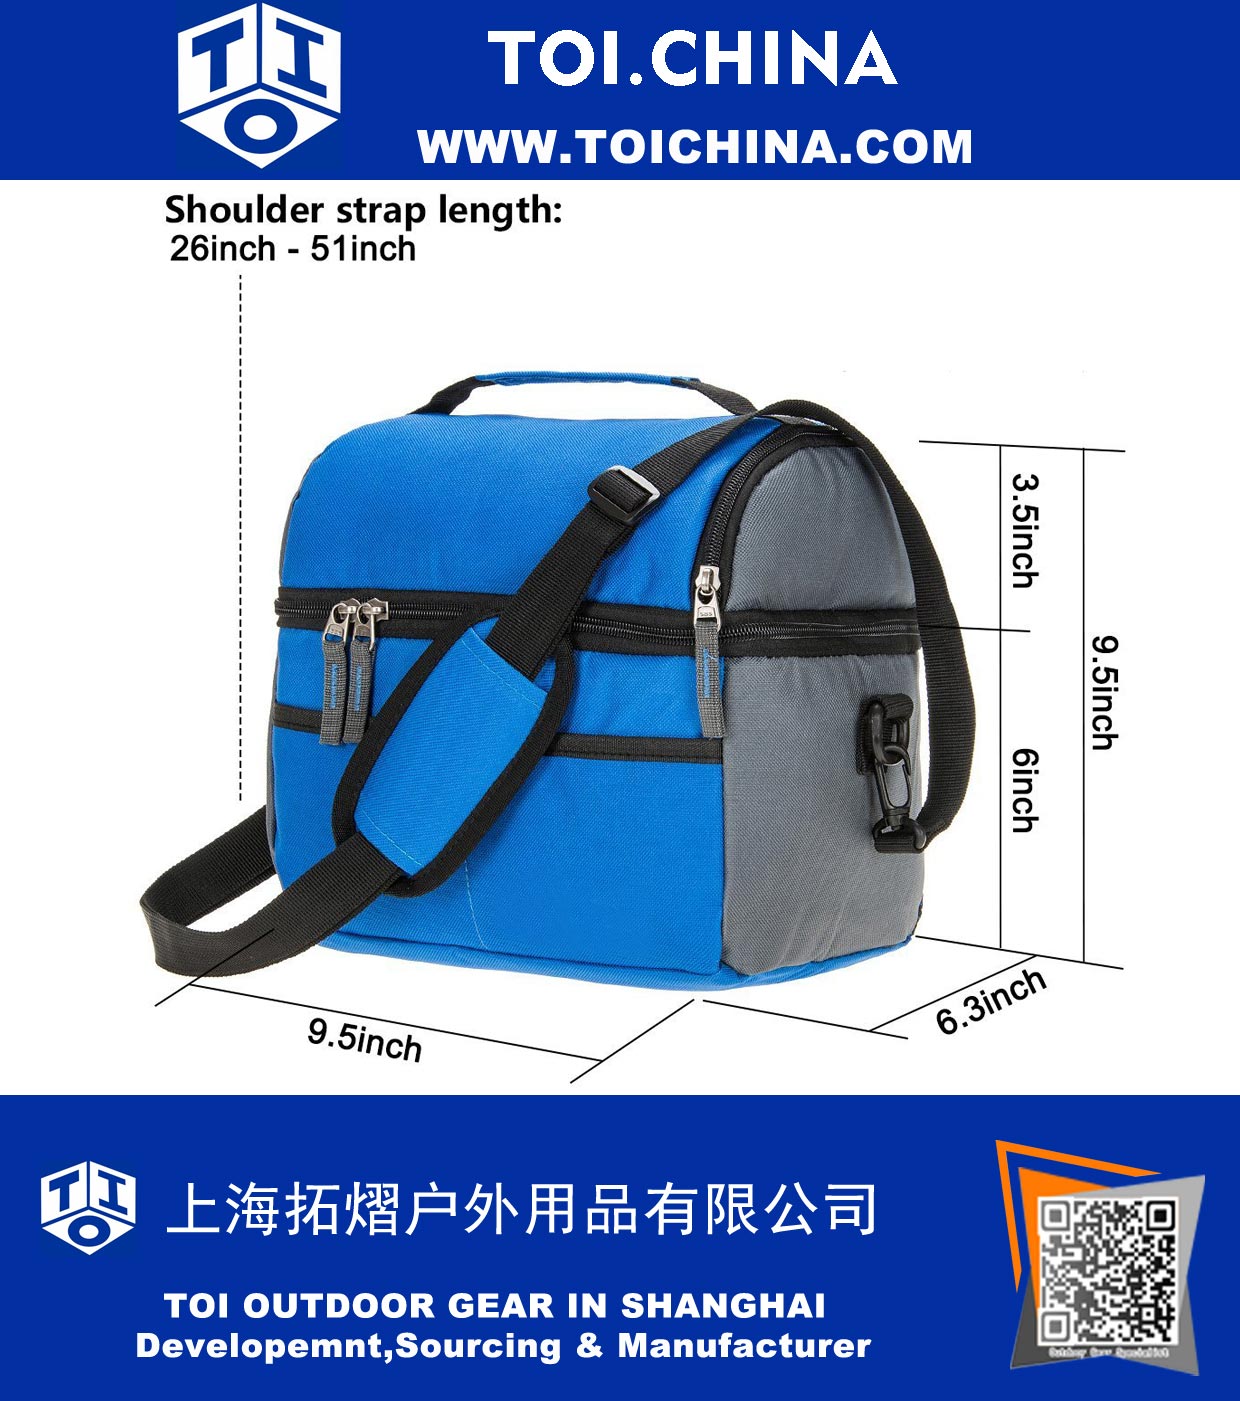 8 Can Cooler Bag Aislamiento doble Compartimento Lunch Bag Aislamiento de alta densidad con forros fuertes a prueba de fugas, muchos bolsillos, cremallera fuerte y costuras